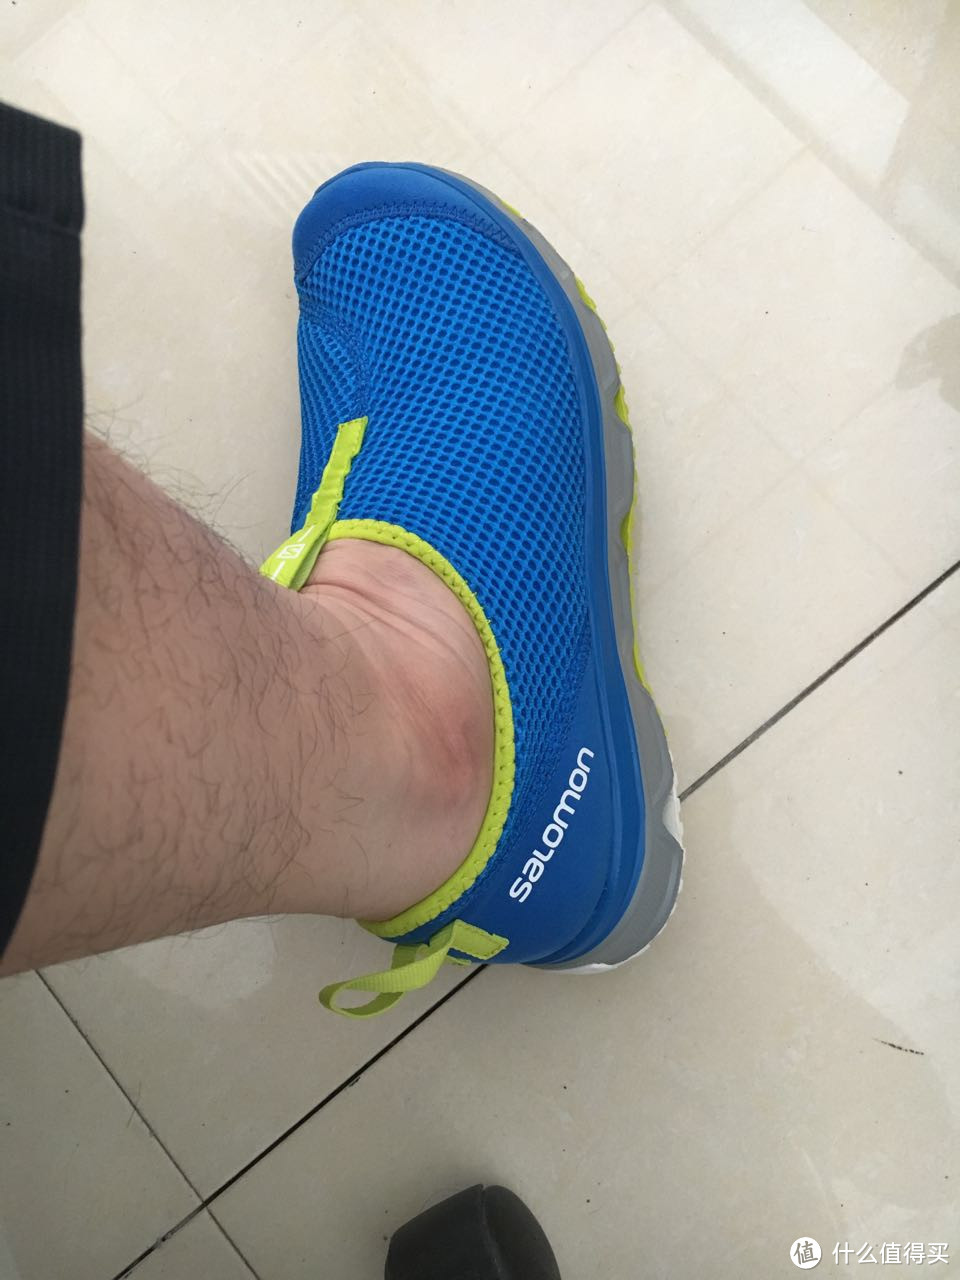 希望能缓解足底筋膜炎——Salomon 萨洛蒙 运动恢复鞋